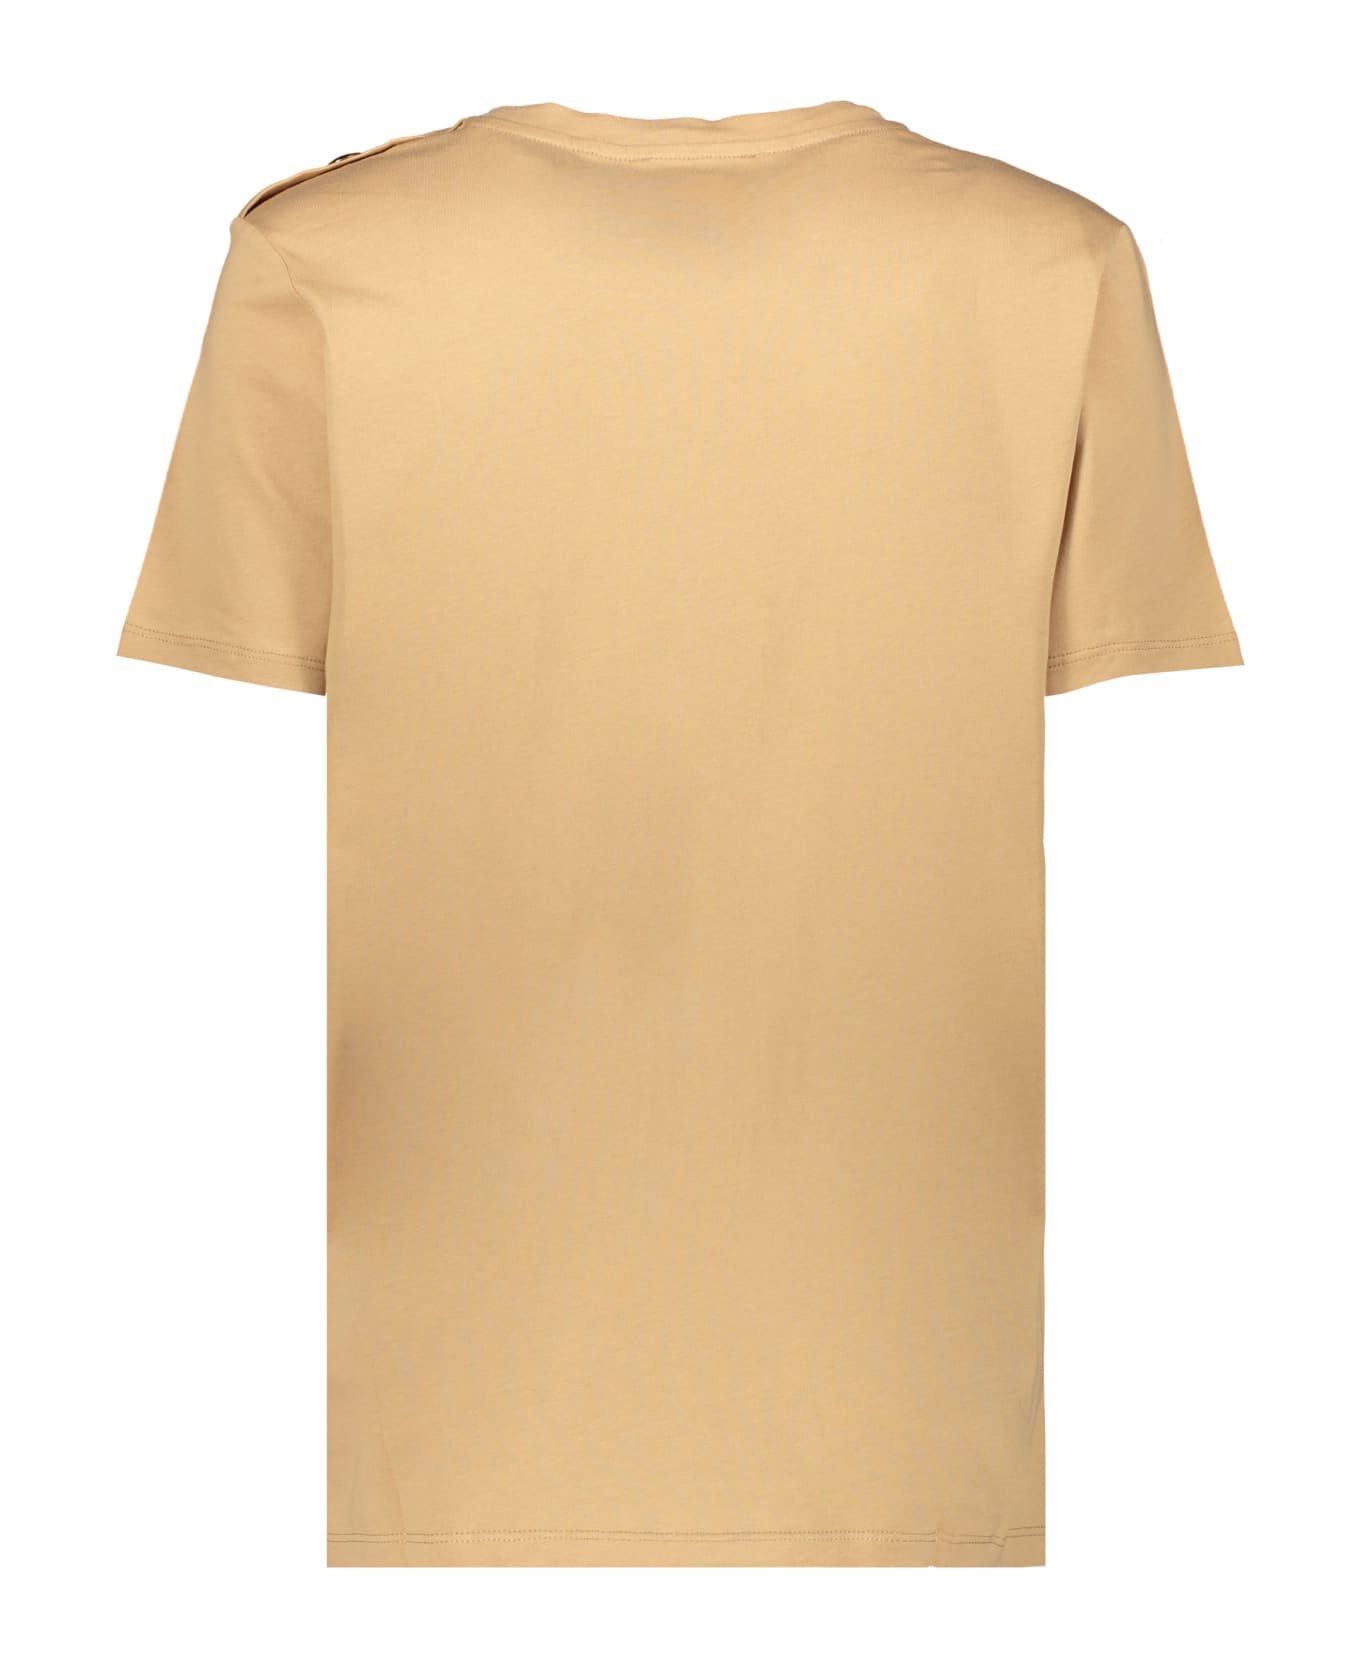 Balmain Logo Print T-shirt - Camel